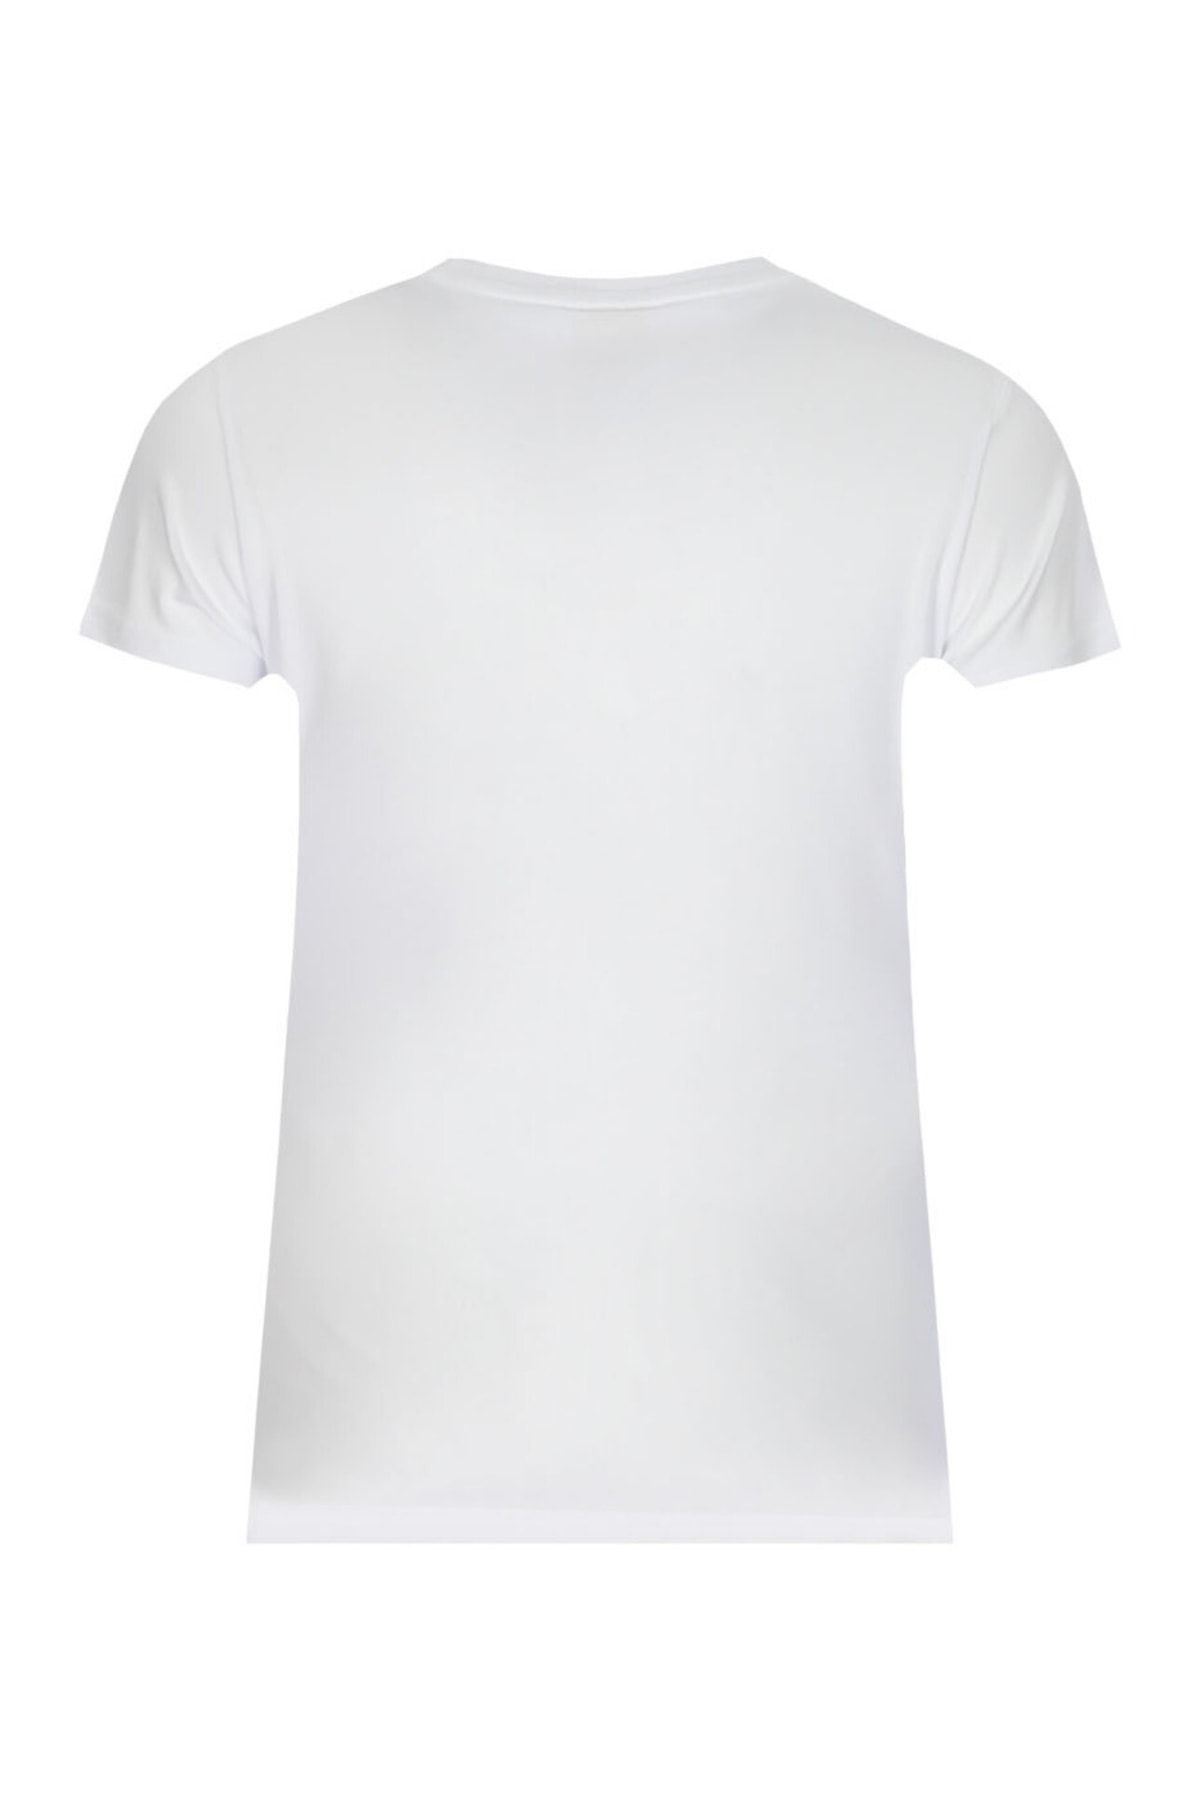 Ruck & Maul Kadın Tişört 23608 1000 - Beyaz